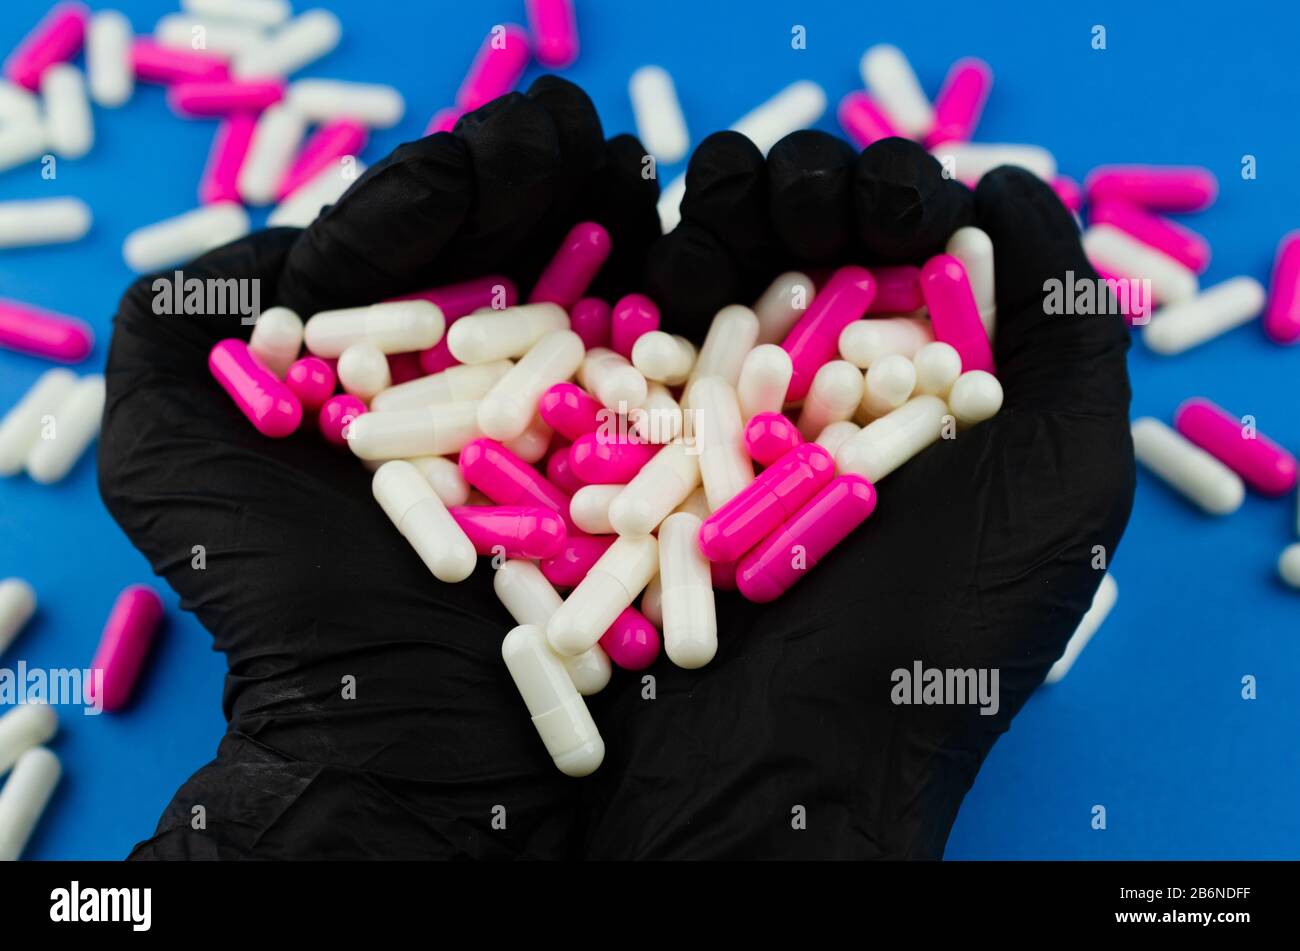 Due mani in guanti medici neri che tengono una manciata di capsule o farmaci come simbolo amore Foto Stock